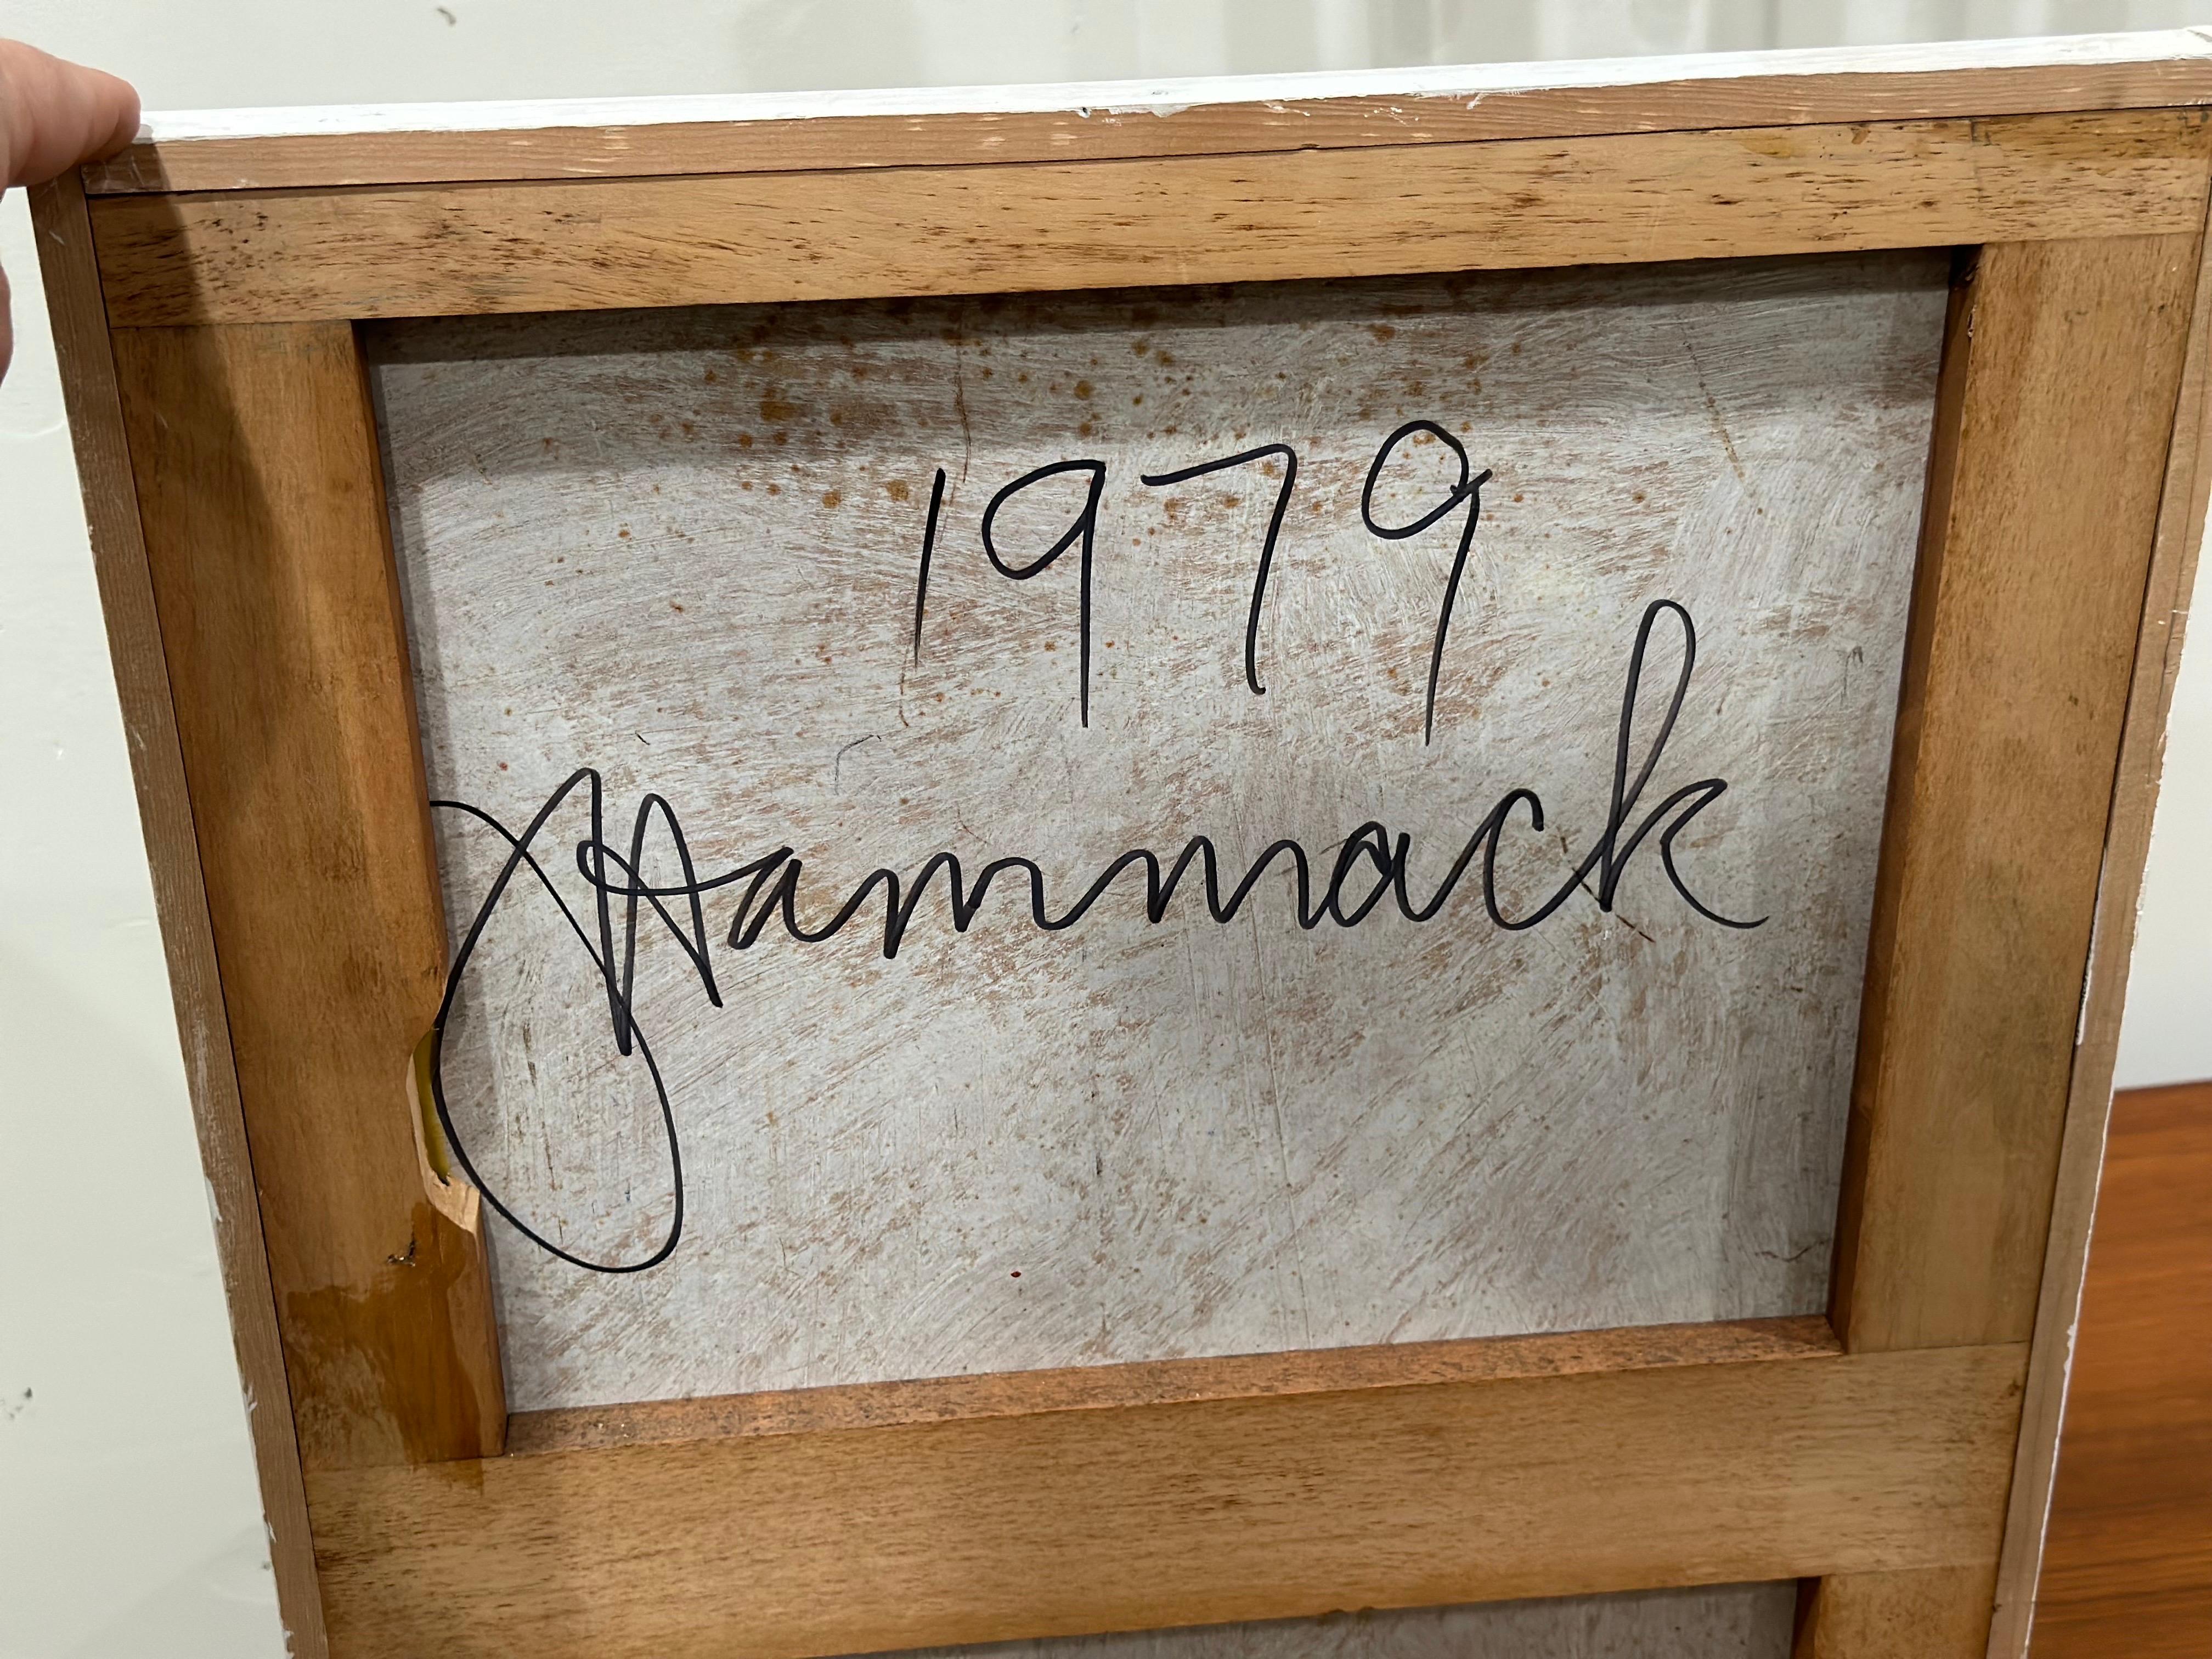 Huile néo-impressionniste sur panneau de l'artiste Jack Hammack de New York/Pacific Northwest

Les œuvres de Jack ont été récemment découvertes dans le nord-ouest du Pacifique, où il a vécu jusqu'à la fin de sa vie et où il a suivi l'enseignement de